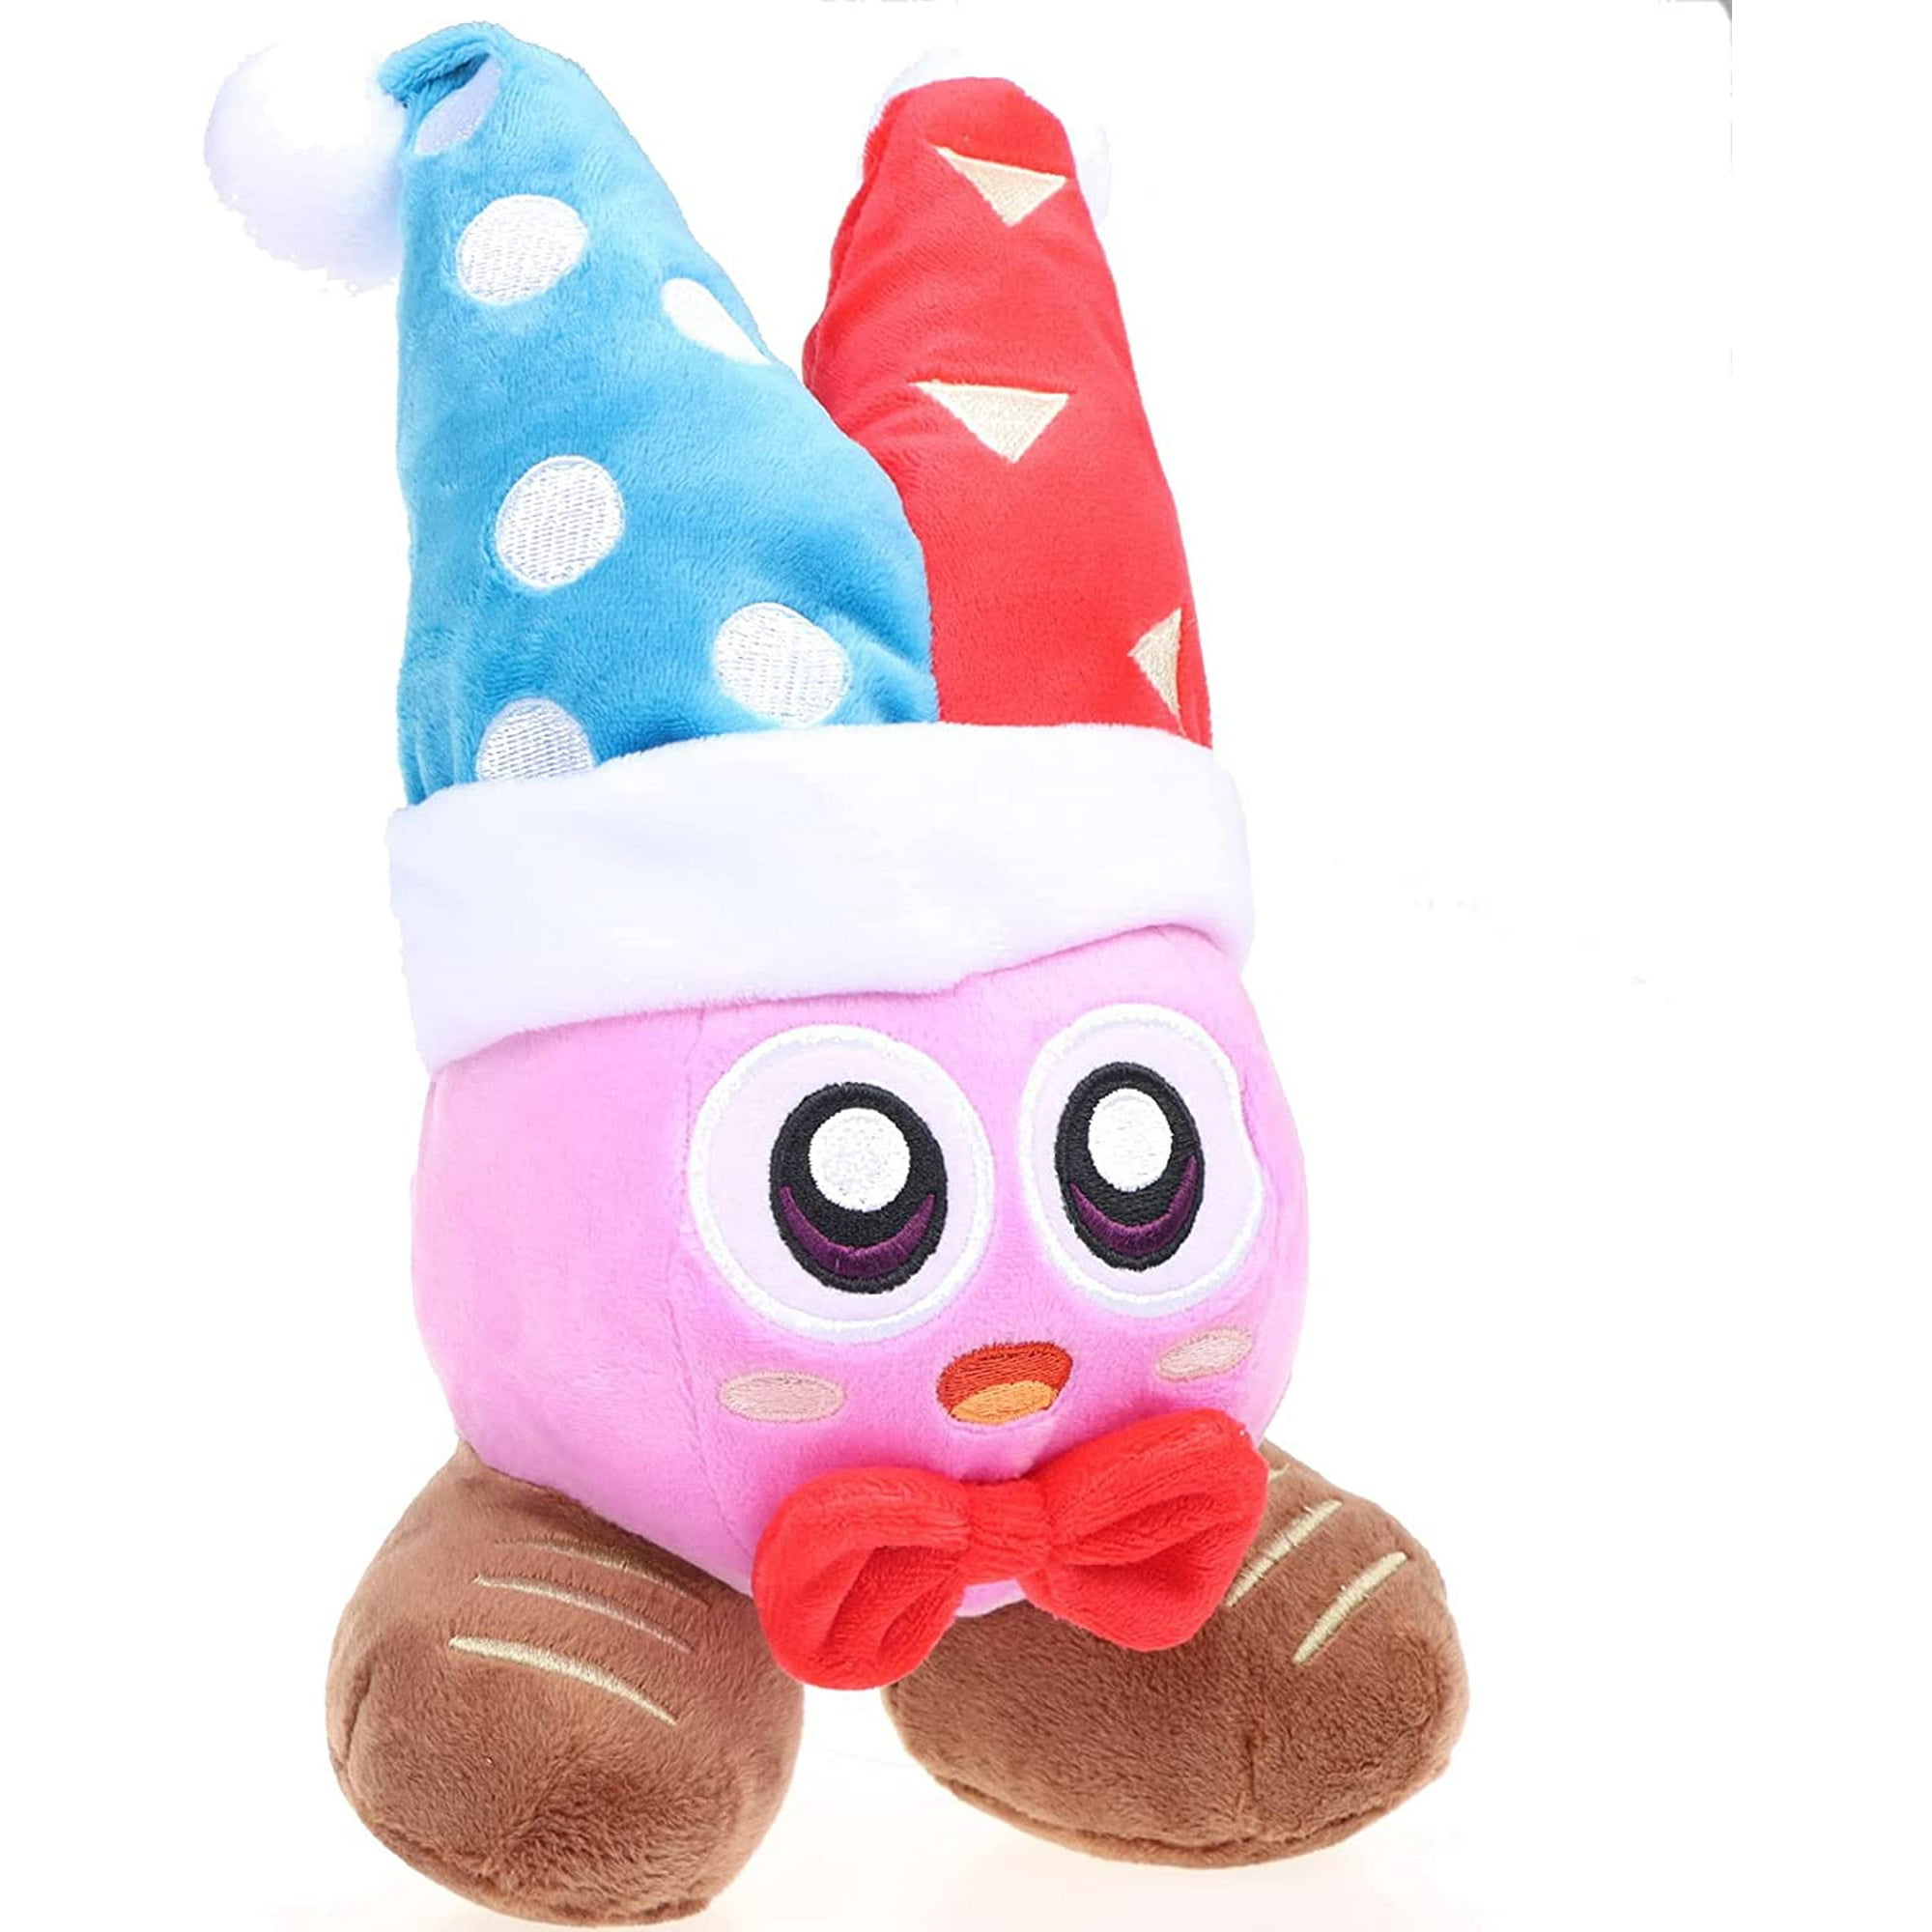 Peluche de Kirby, peluche de coche Kirby Eat, peluche de coche Kirby,  peluche de Kirby de 13.7 pulgadas, el peluche de Kirby es un regalo para la